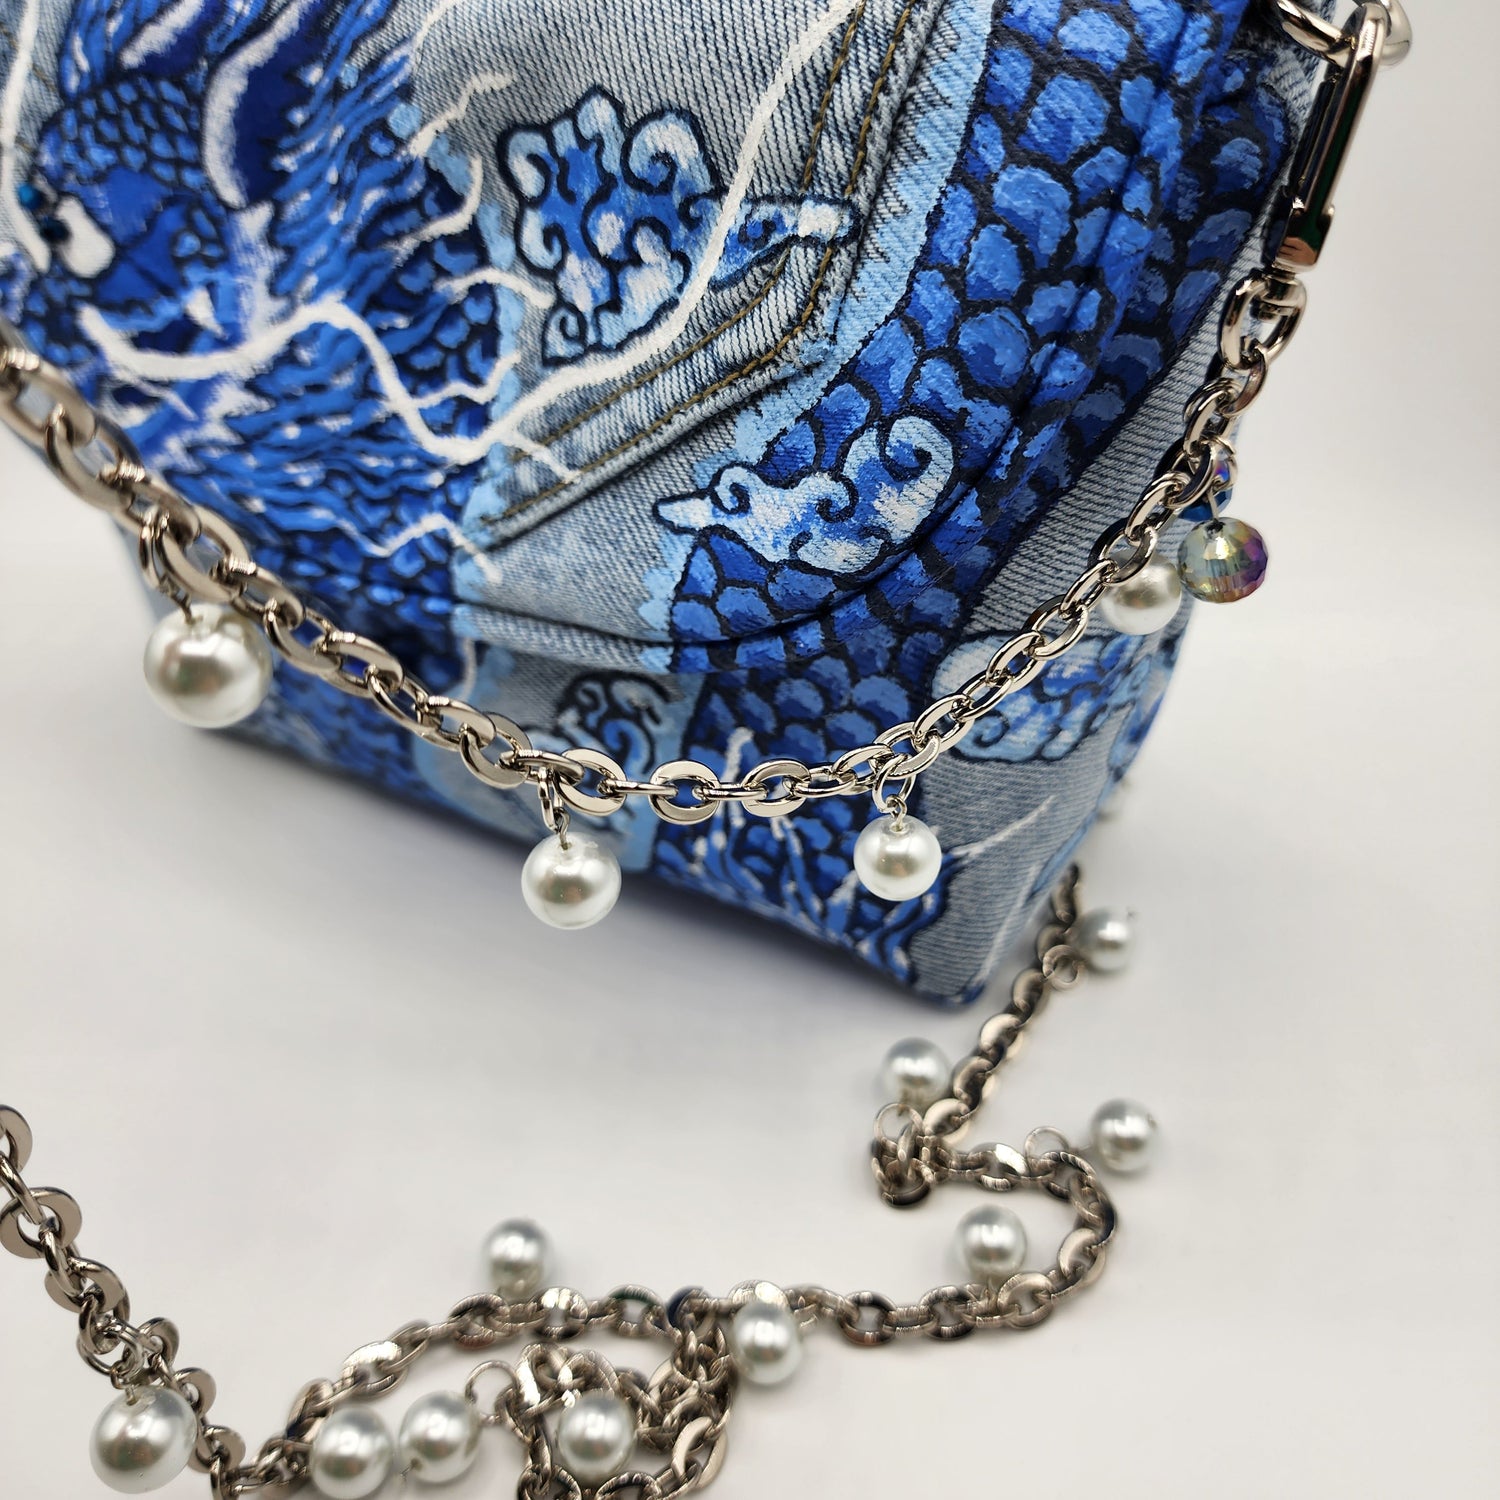 Blue Dragon Jean Shoulder Bag - NOHBI